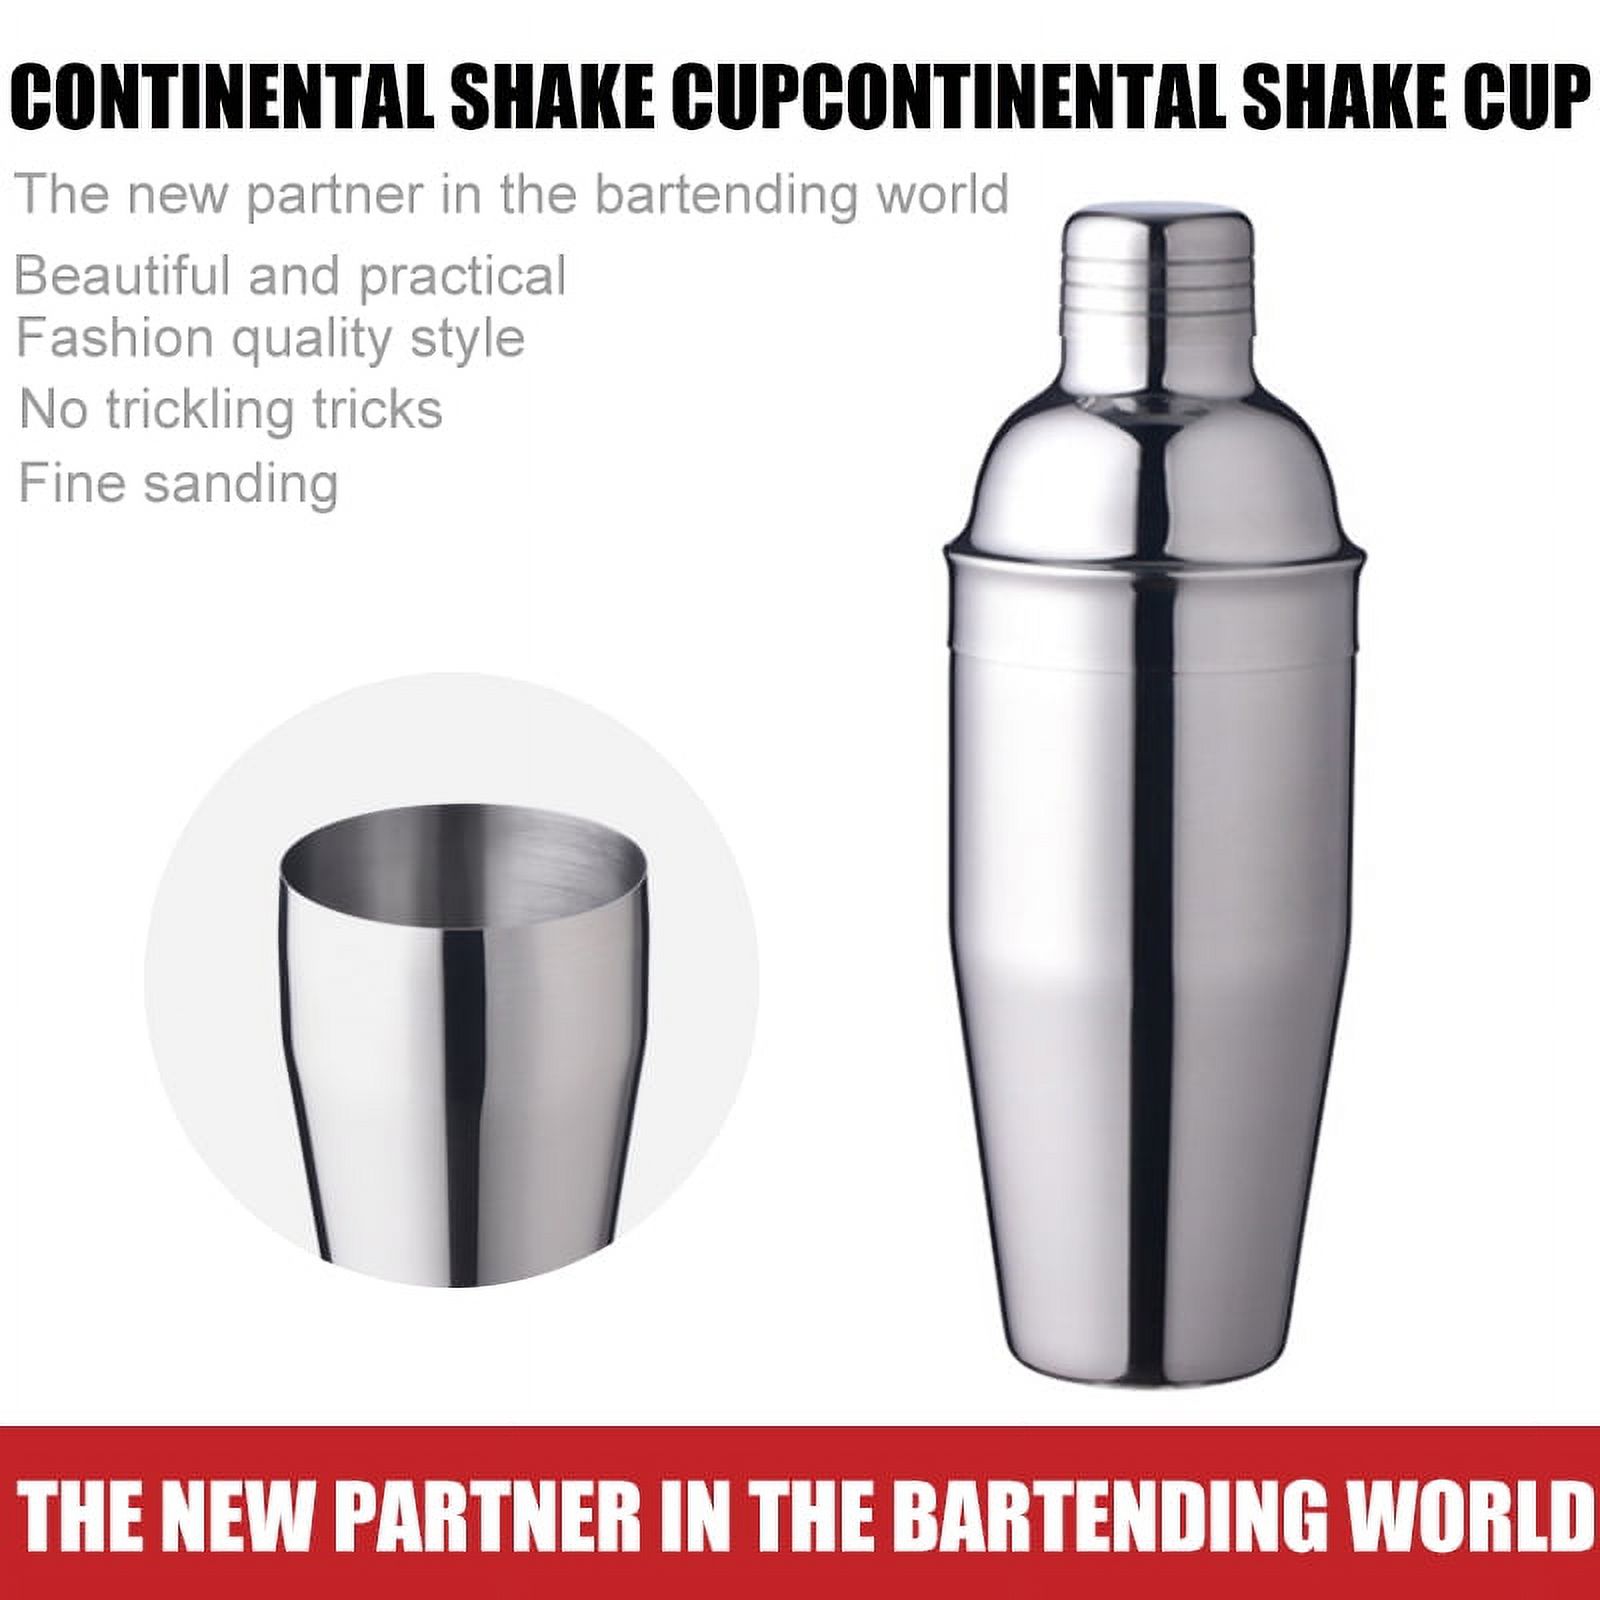 VONTER Shaker,Bartender Kit,Cocktail Shaker Set Drink Bar, Professional Stainless Steel Shaker Bar,Cocktail Shaker Stainless Steel Martini Shaker,(18/8 grade stainless steel,750ml) - image 1 of 8